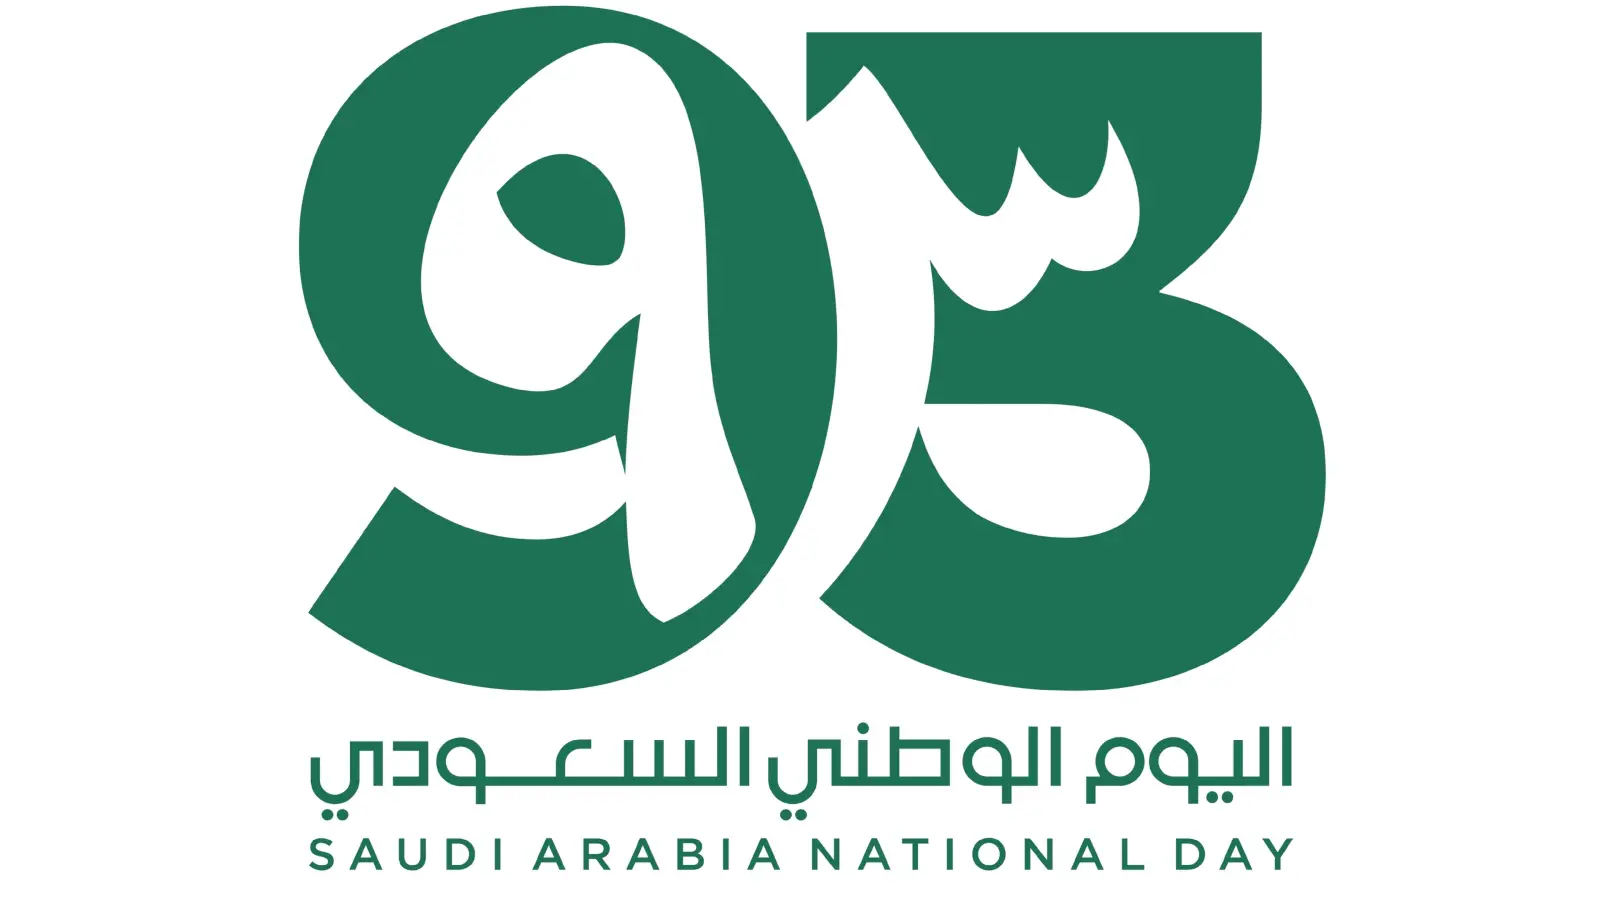 عبارات عن اليوم الوطني السعودي 93.webp - مدونة التقنية العربية